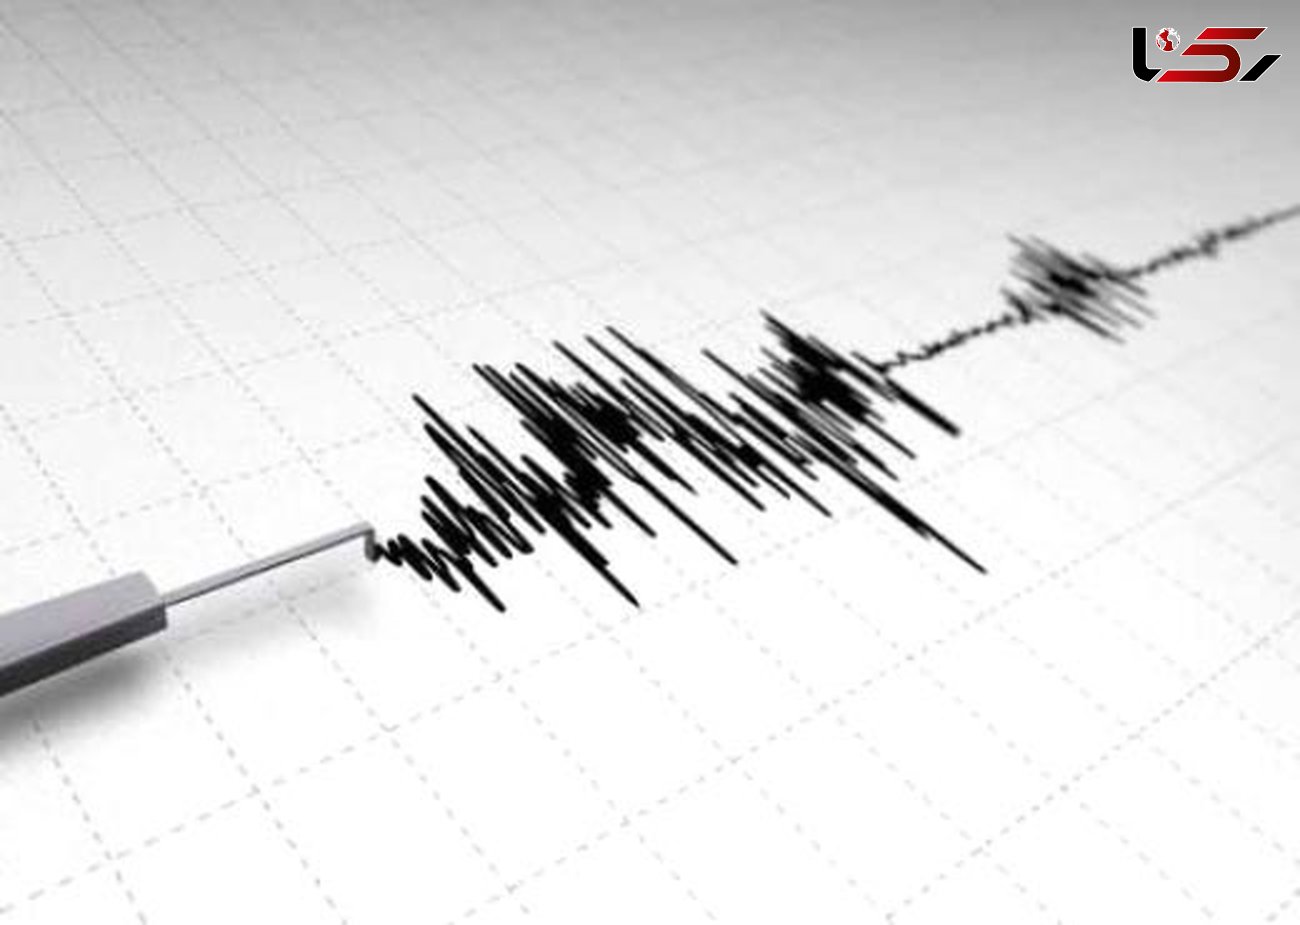  زلزله ۶ و ۵ دهم ریشتری در جنوب اقیانوس آرام 